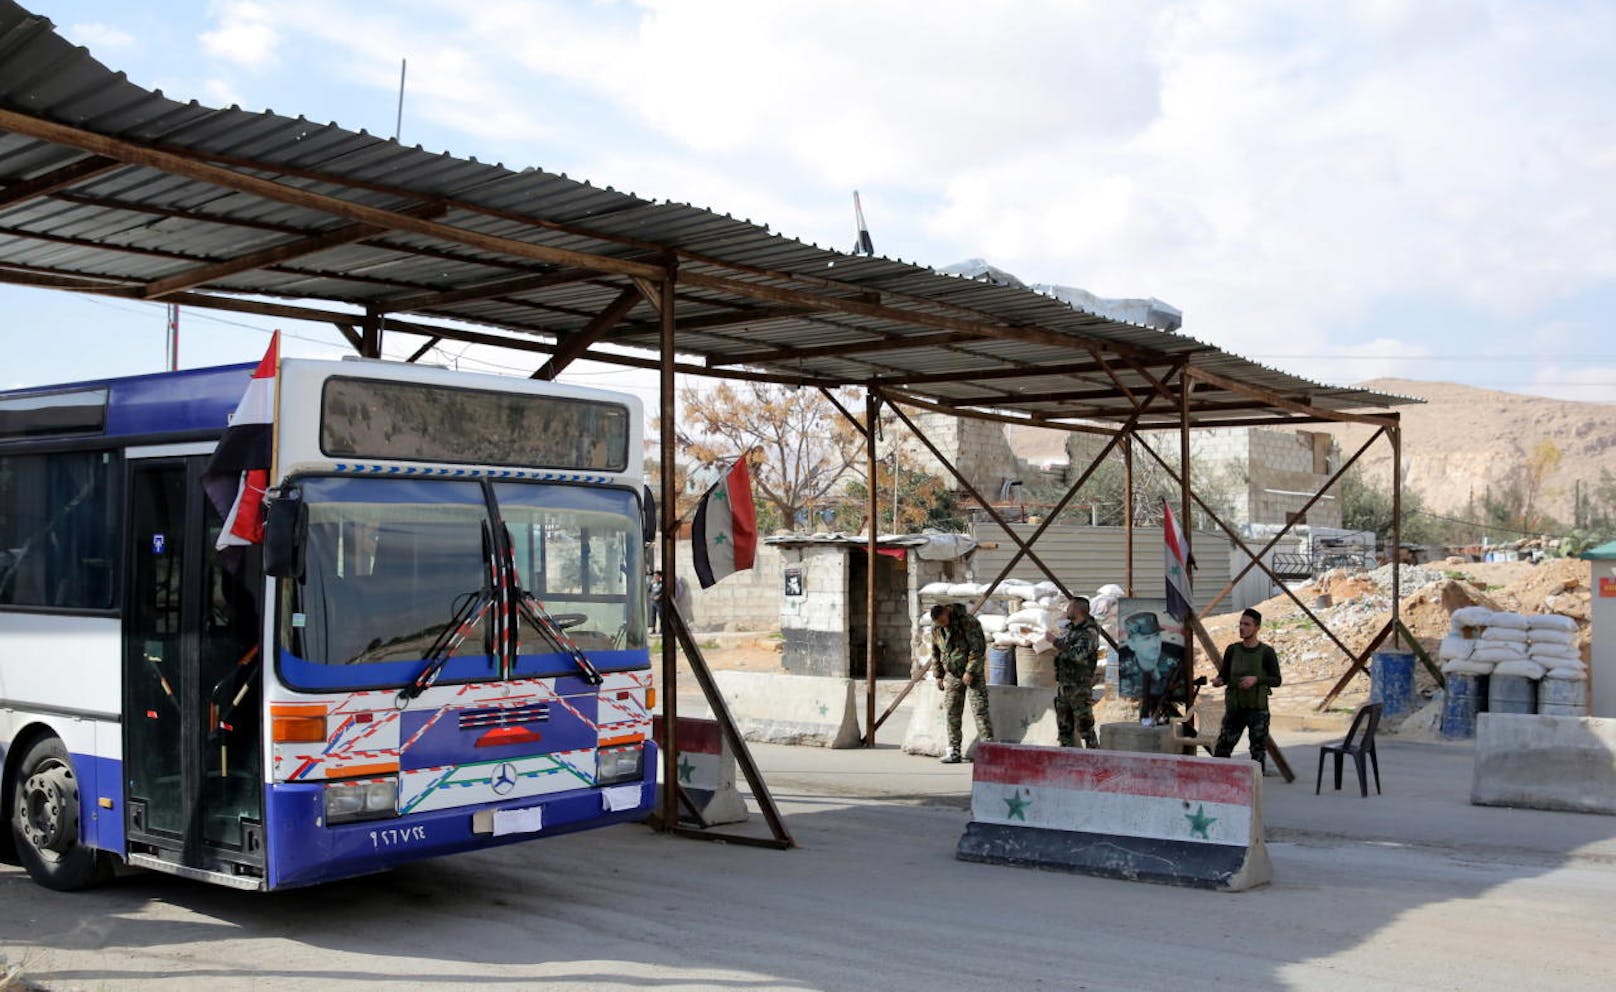 Regierungsbusse für die Evakuation von Zivilisten aus Ost-Ghouta kehren leer nach Damaskus zurück. Laut Aussagen von russischer und syrischer Seite verhindern die Islamisten in Ost-Ghouta die Evakuierung von Zivilisten.